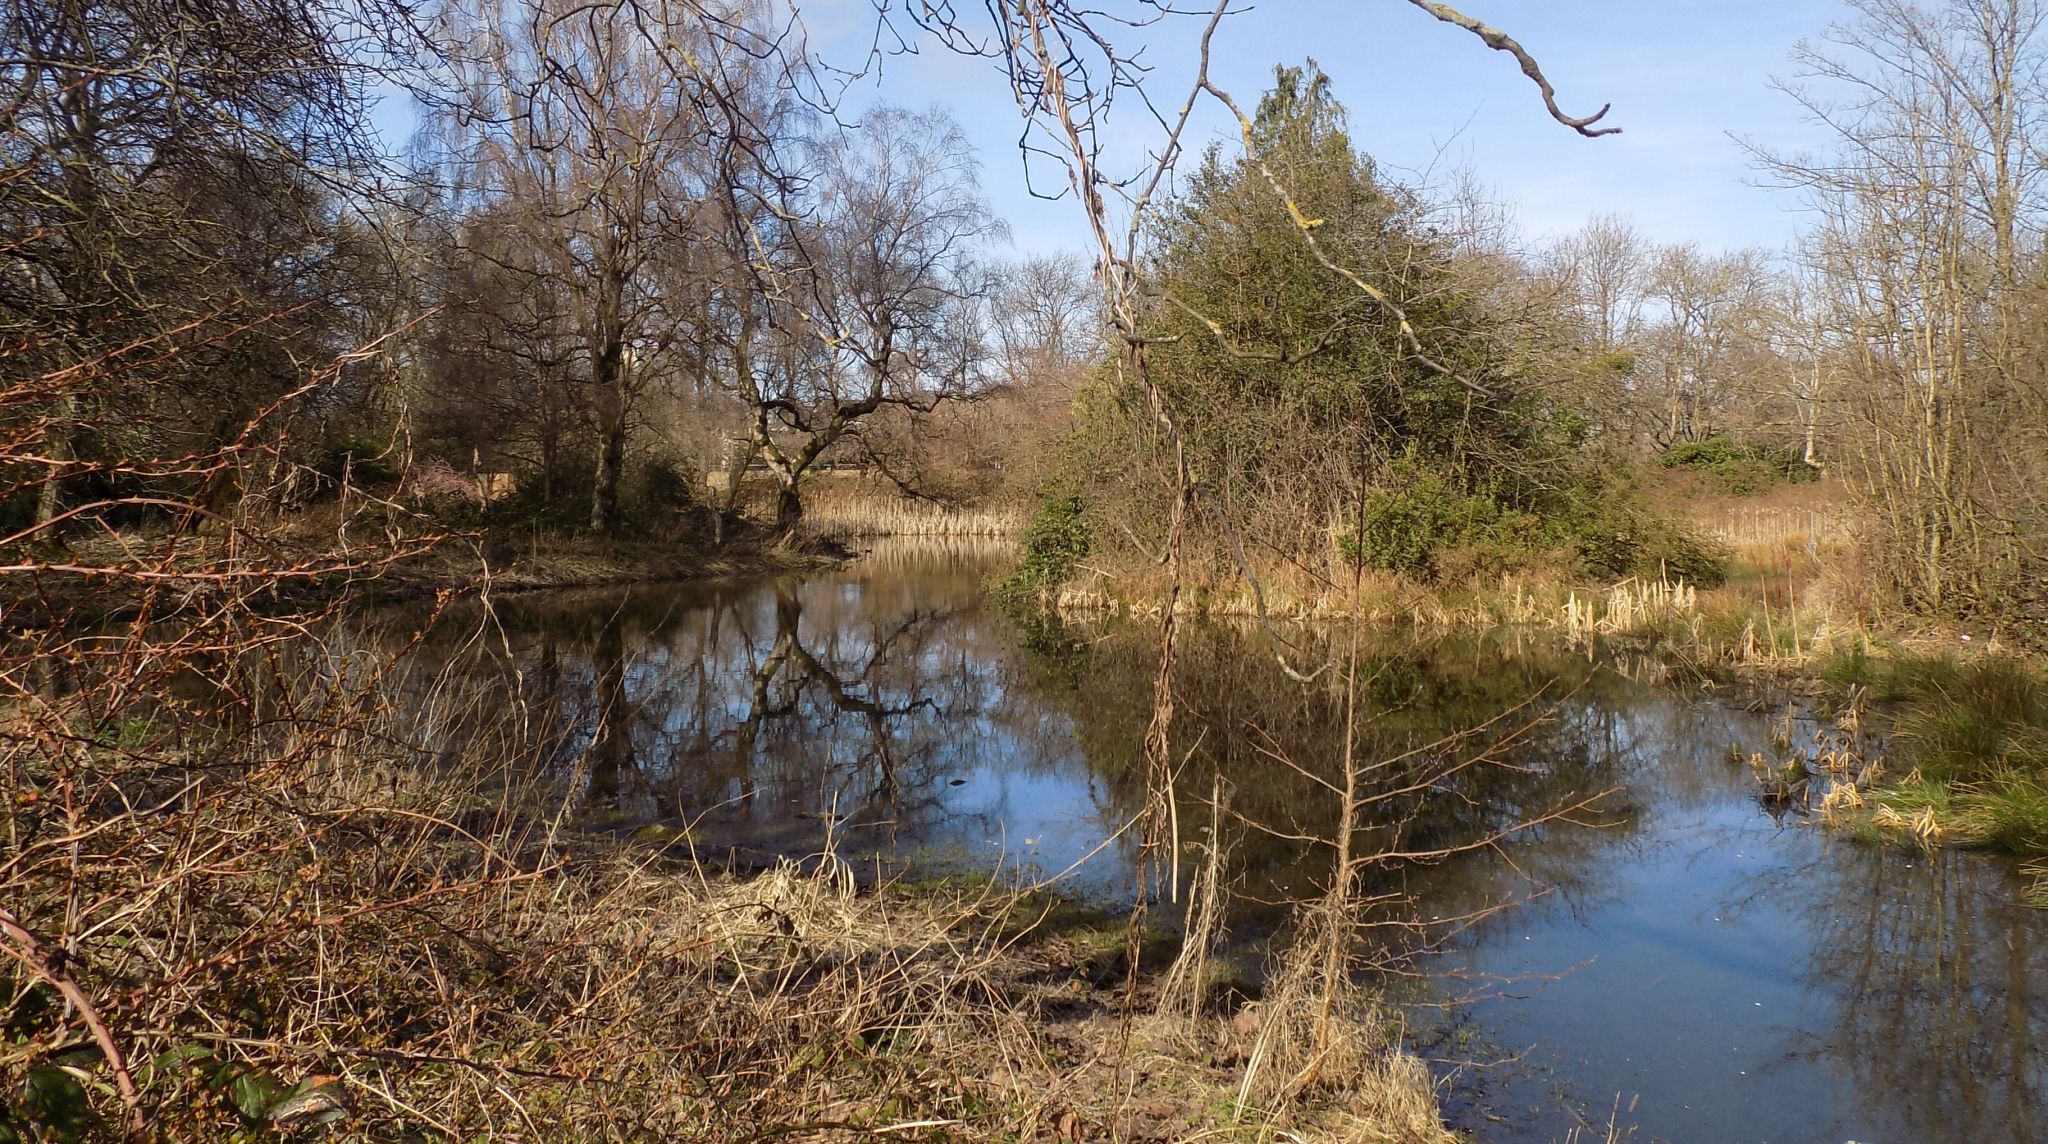 The wildlife pond in Richmond Park